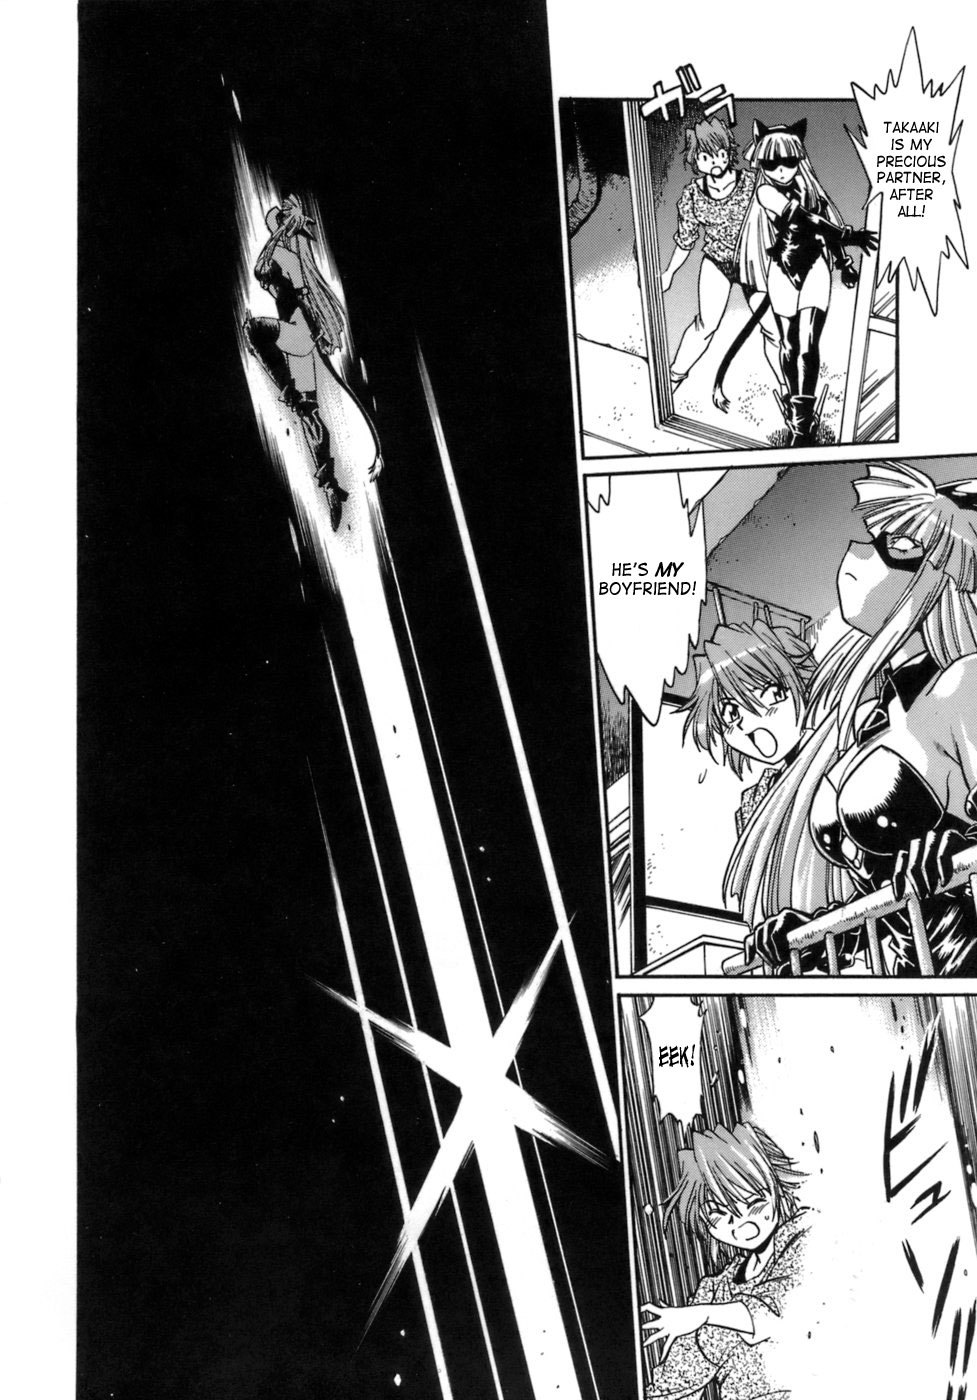 Tail Chaser Vol.1 141 hentai manga